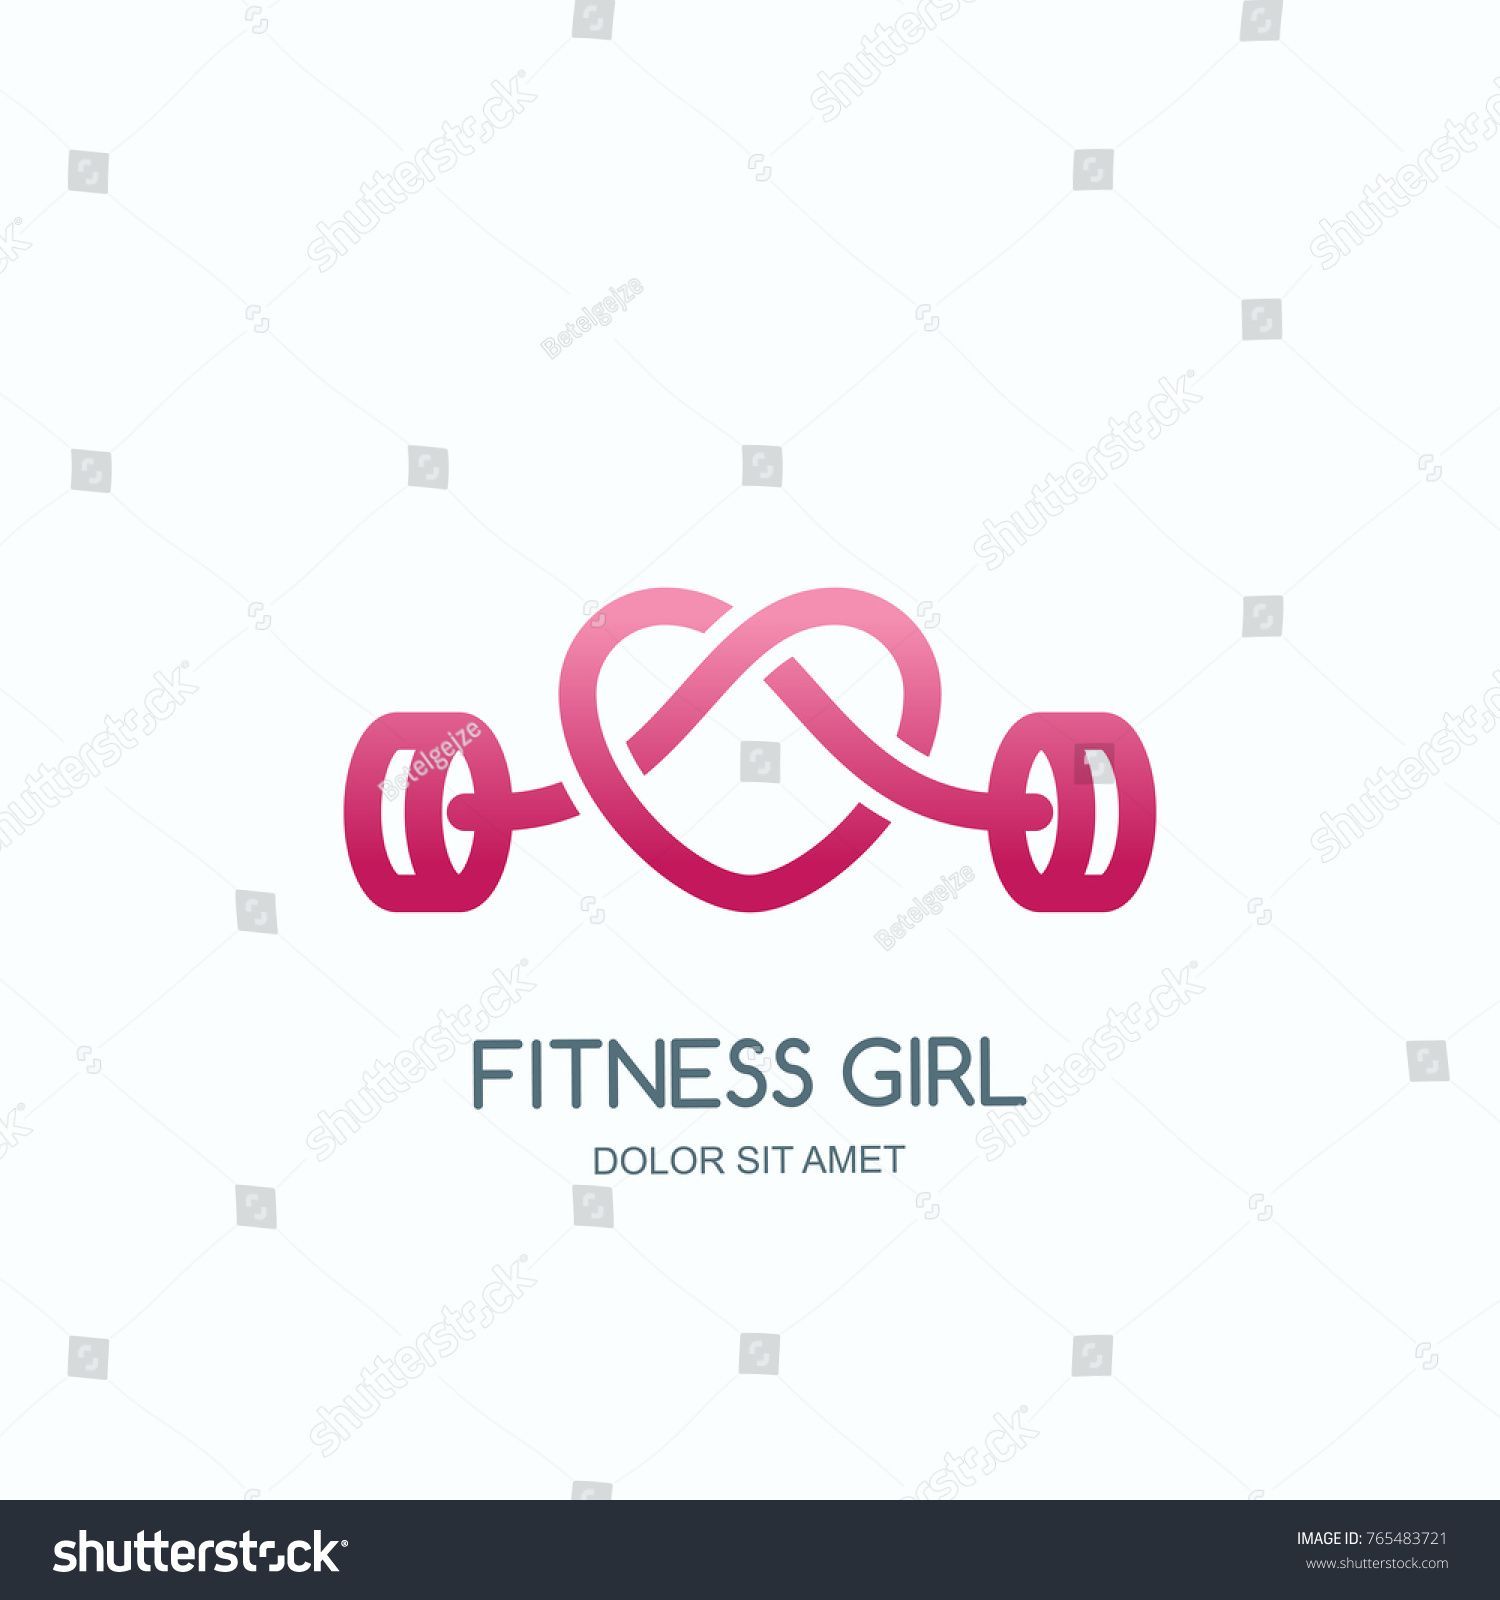 Vector de stock (libre de regal?as) sobre El concepto de gimnasio femenino. Logo765483721 -   12 female fitness Logo ideas